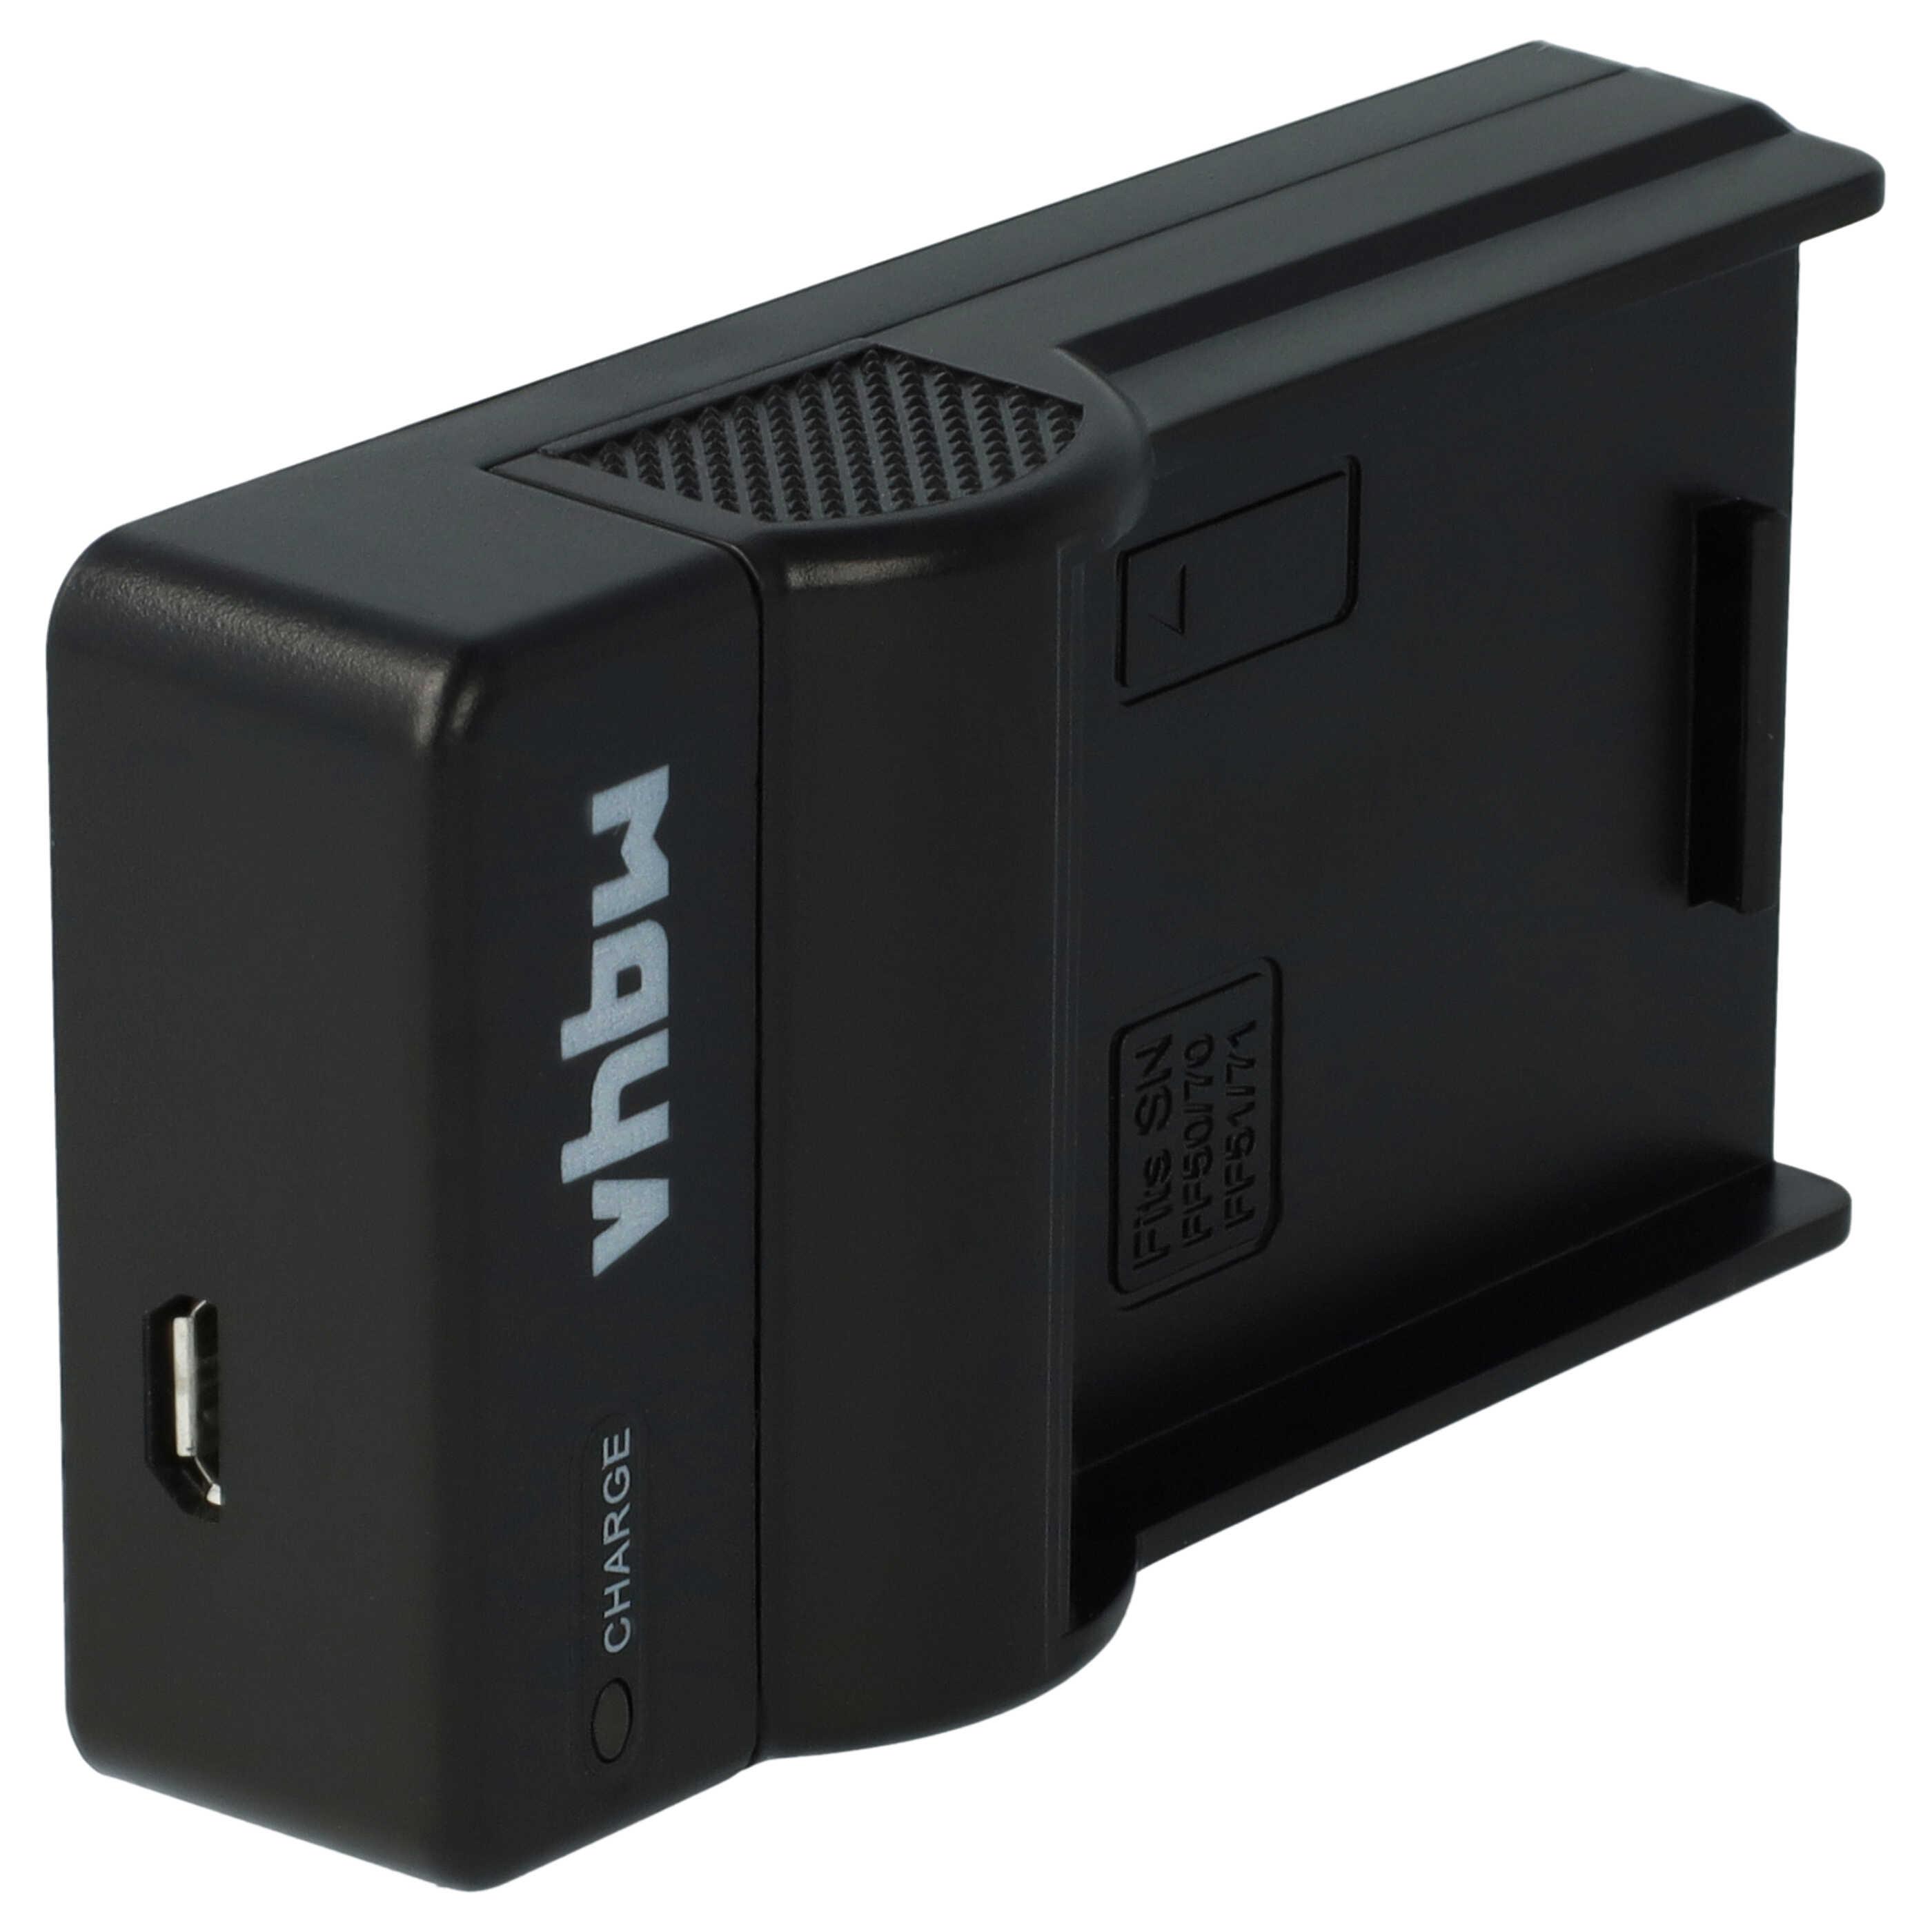 Akku Ladegerät passend für Sony NP-FF50 Kamera u.a. - 0,5 A, 8,4 V